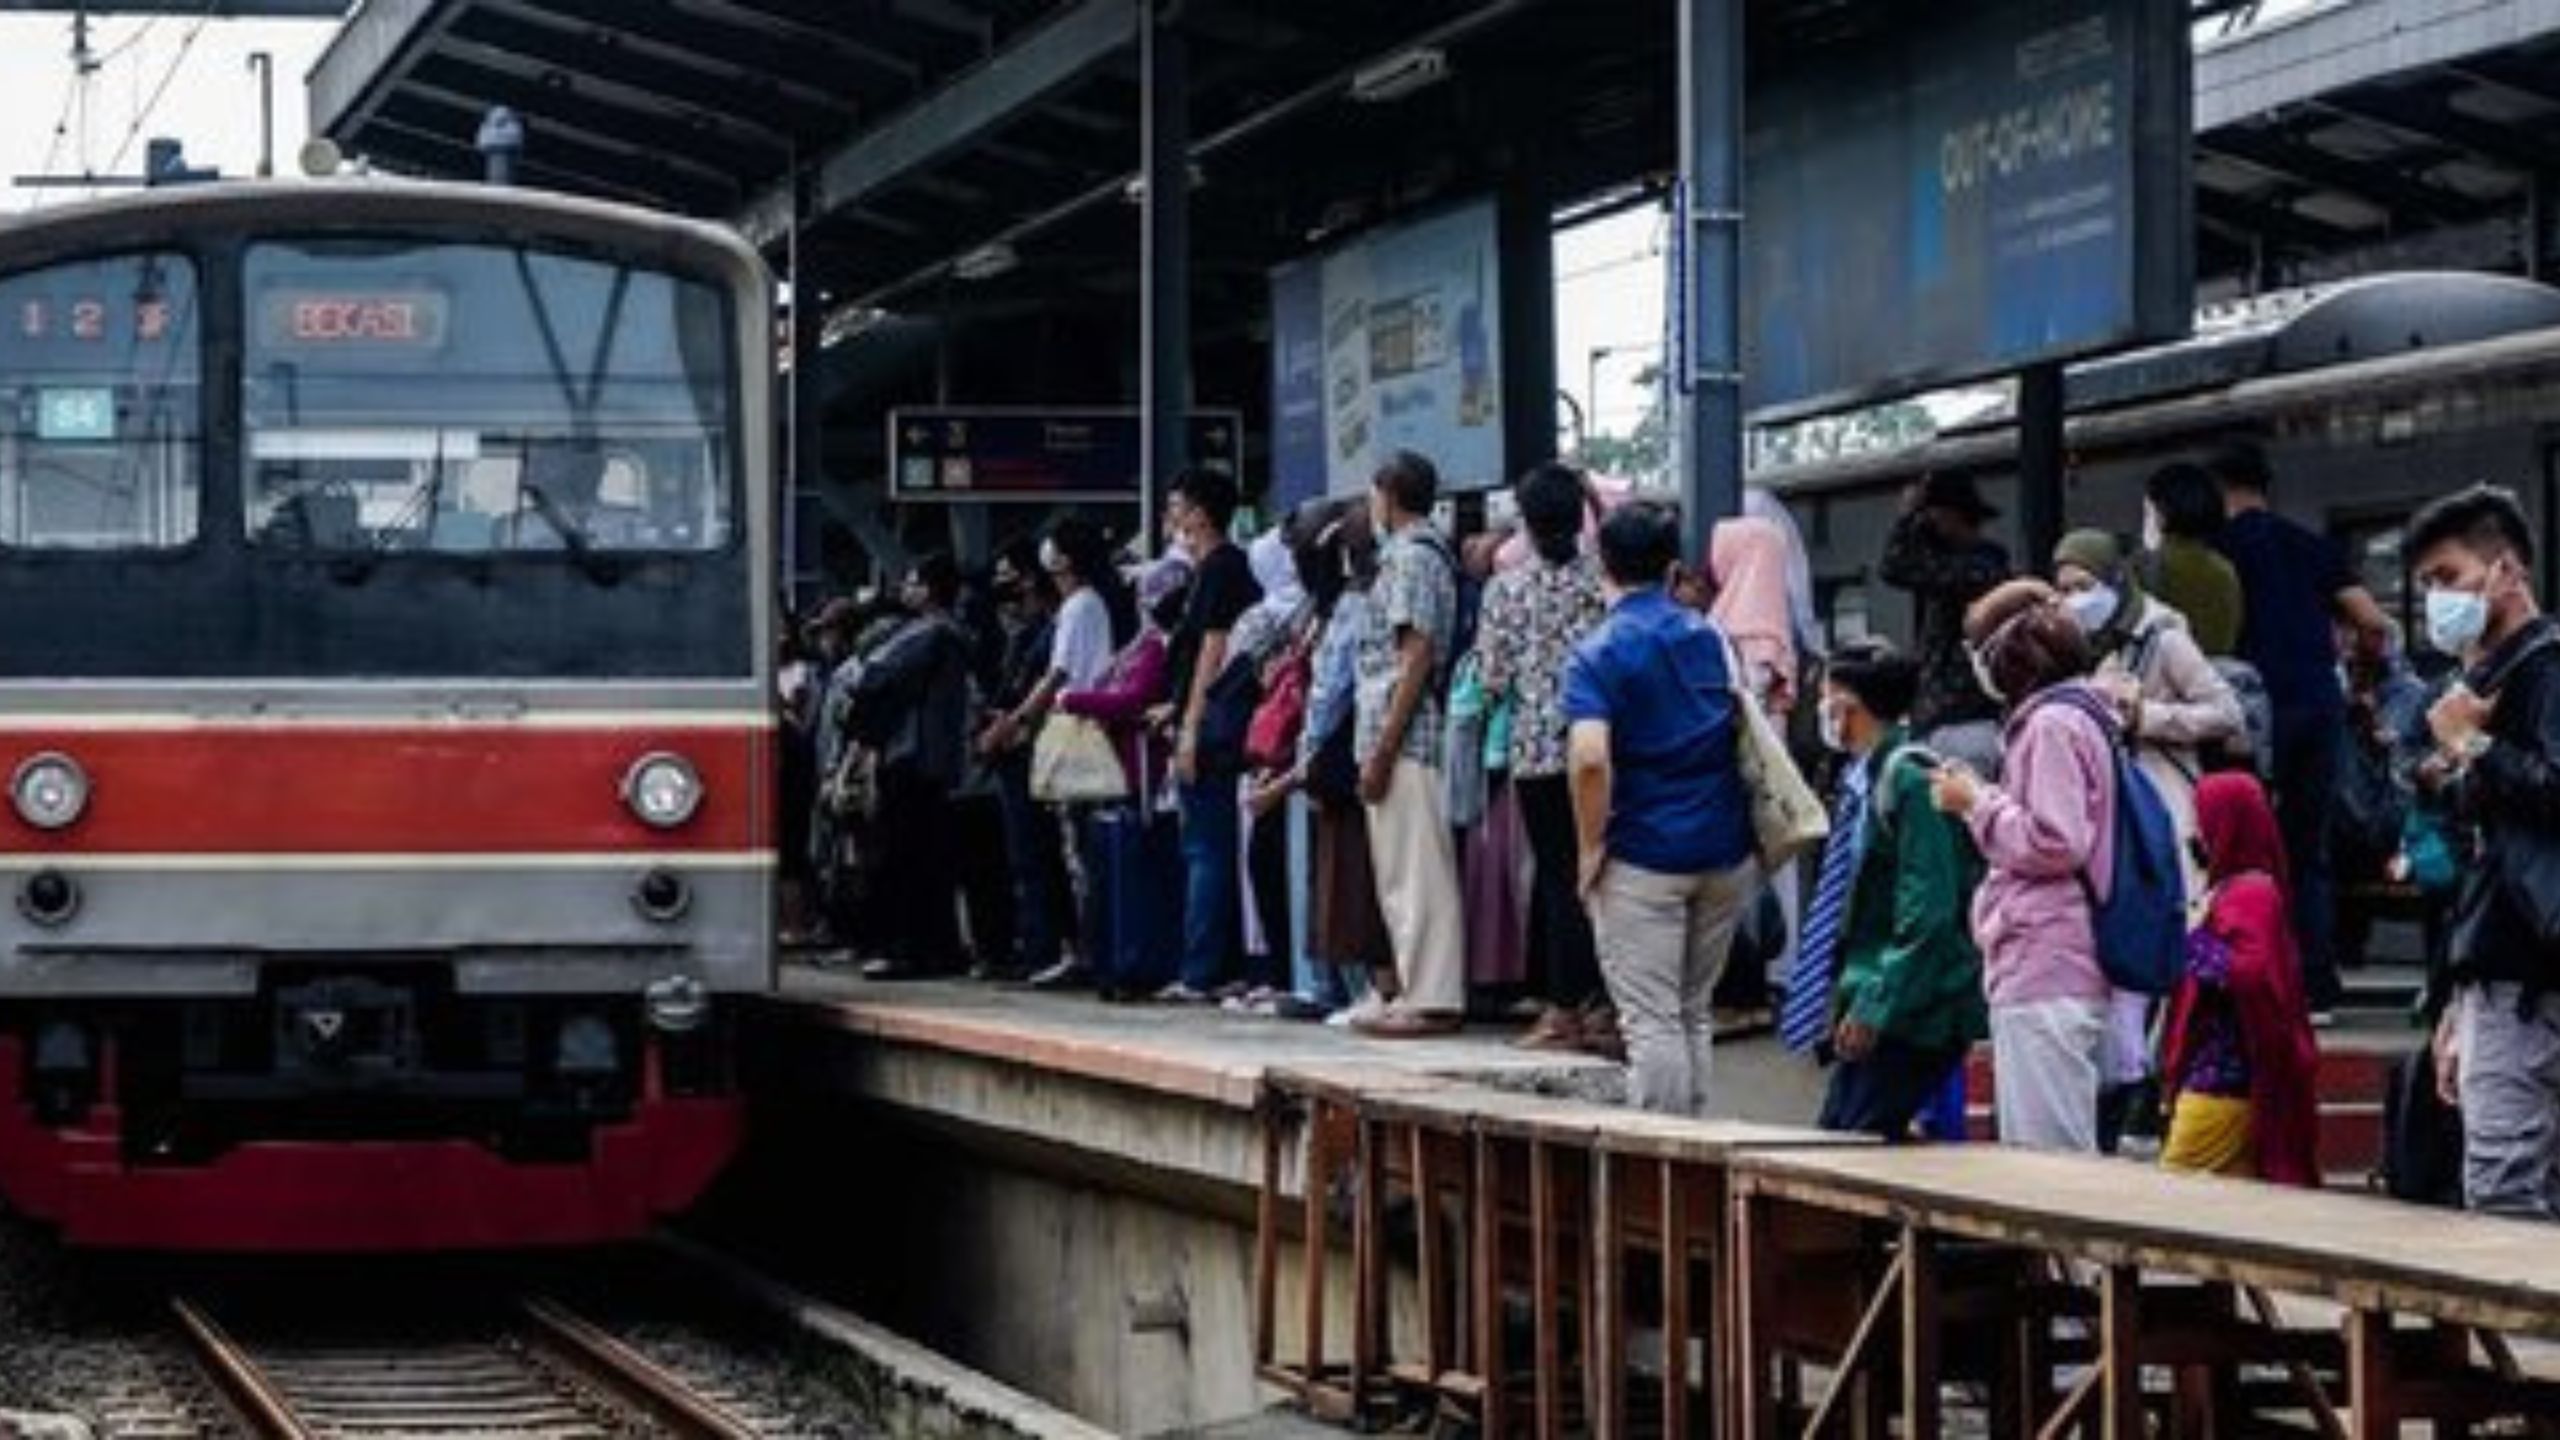 Kisah Kereta Berjalan Tanpa Masinis Dan Penumpang Di Stasiun Manggarai, Begini Ceritanya!